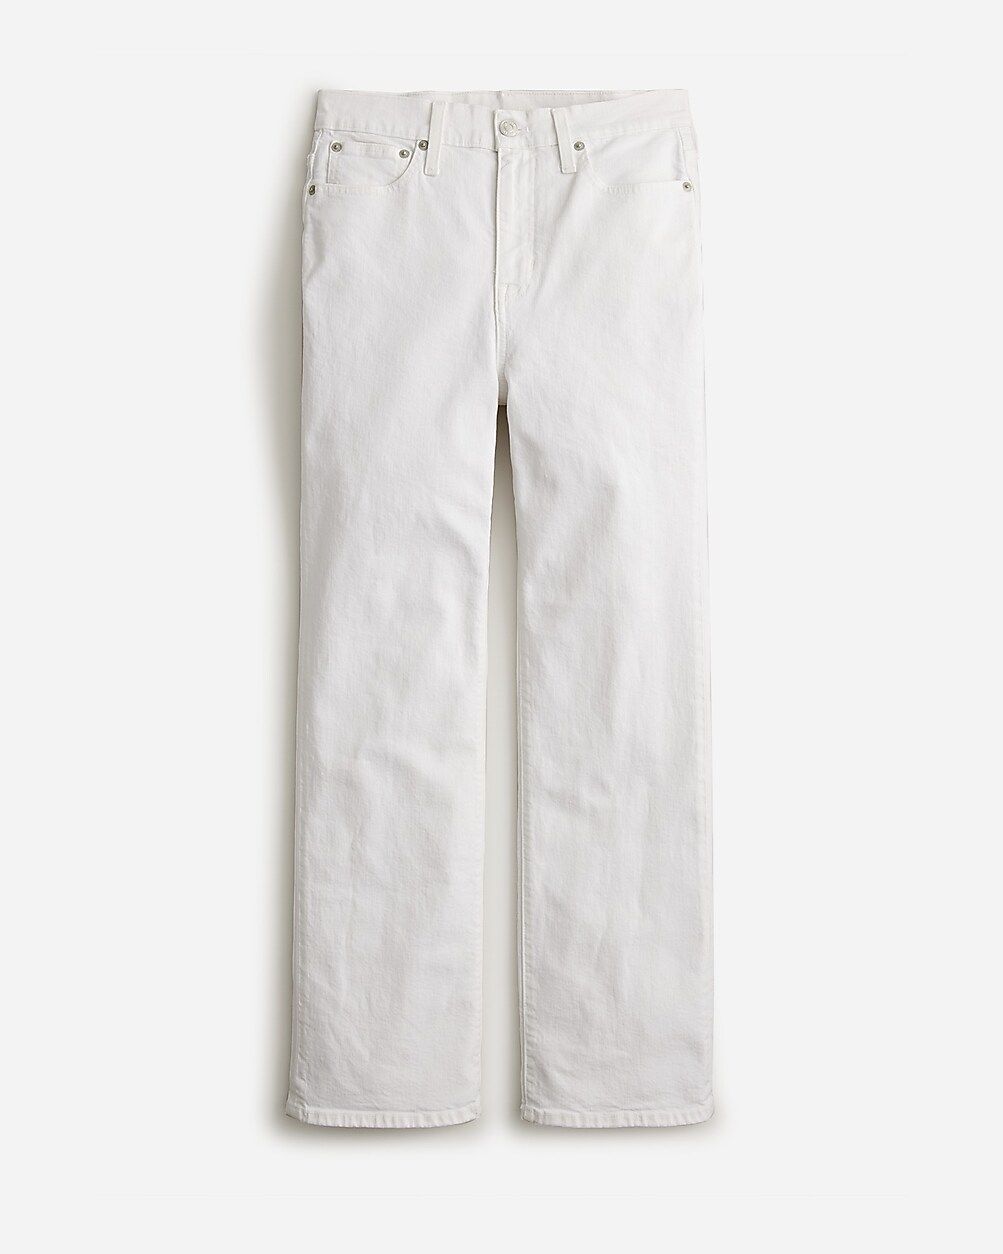 Skinny flare jean in white wash | J.Crew US